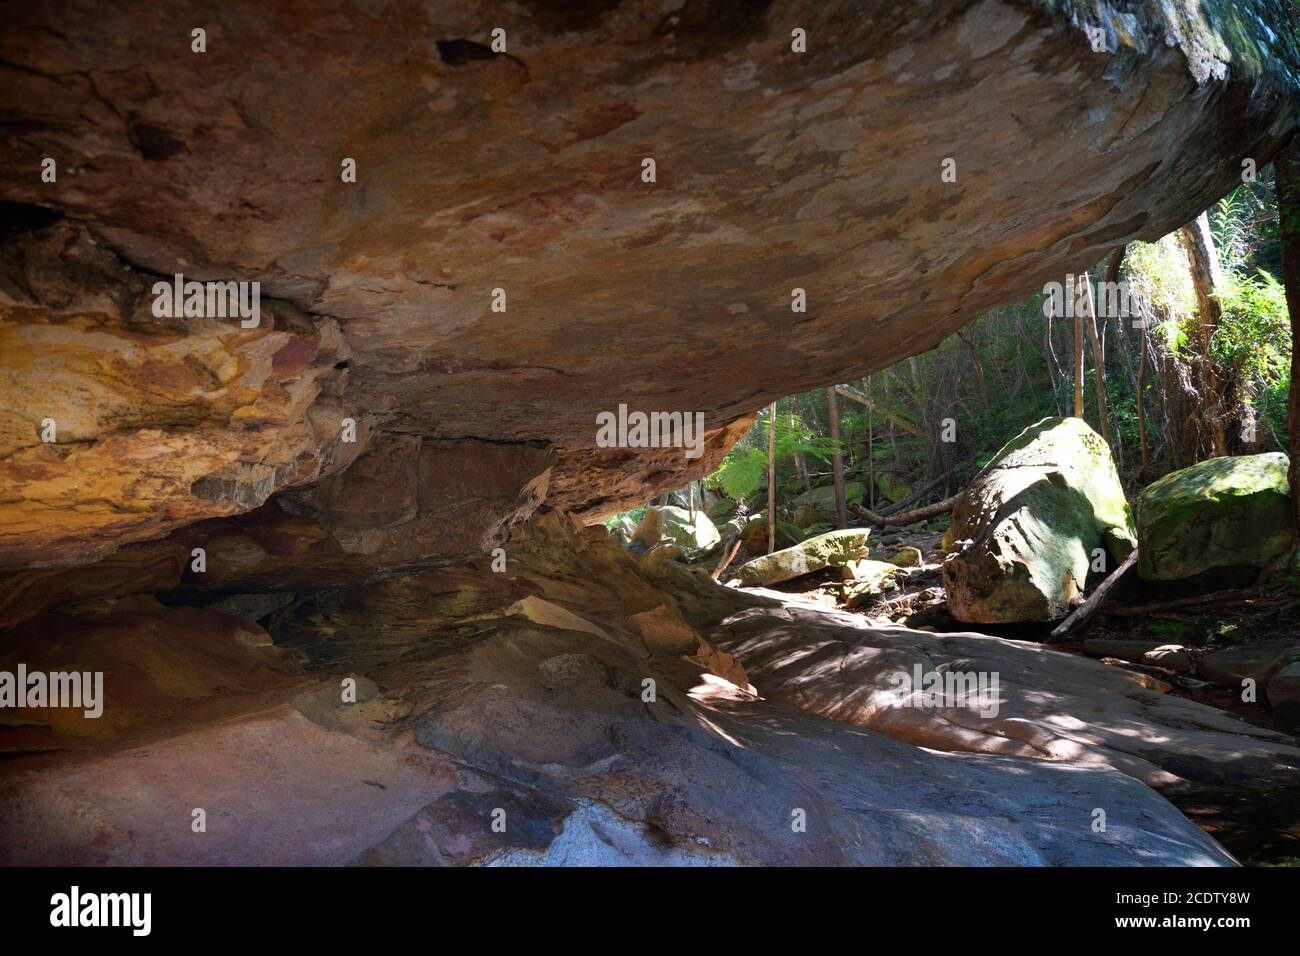 Le surplomb, un lieu touristique populaire dans le parc national de Cania gorge, Queensland, Australie Banque D'Images